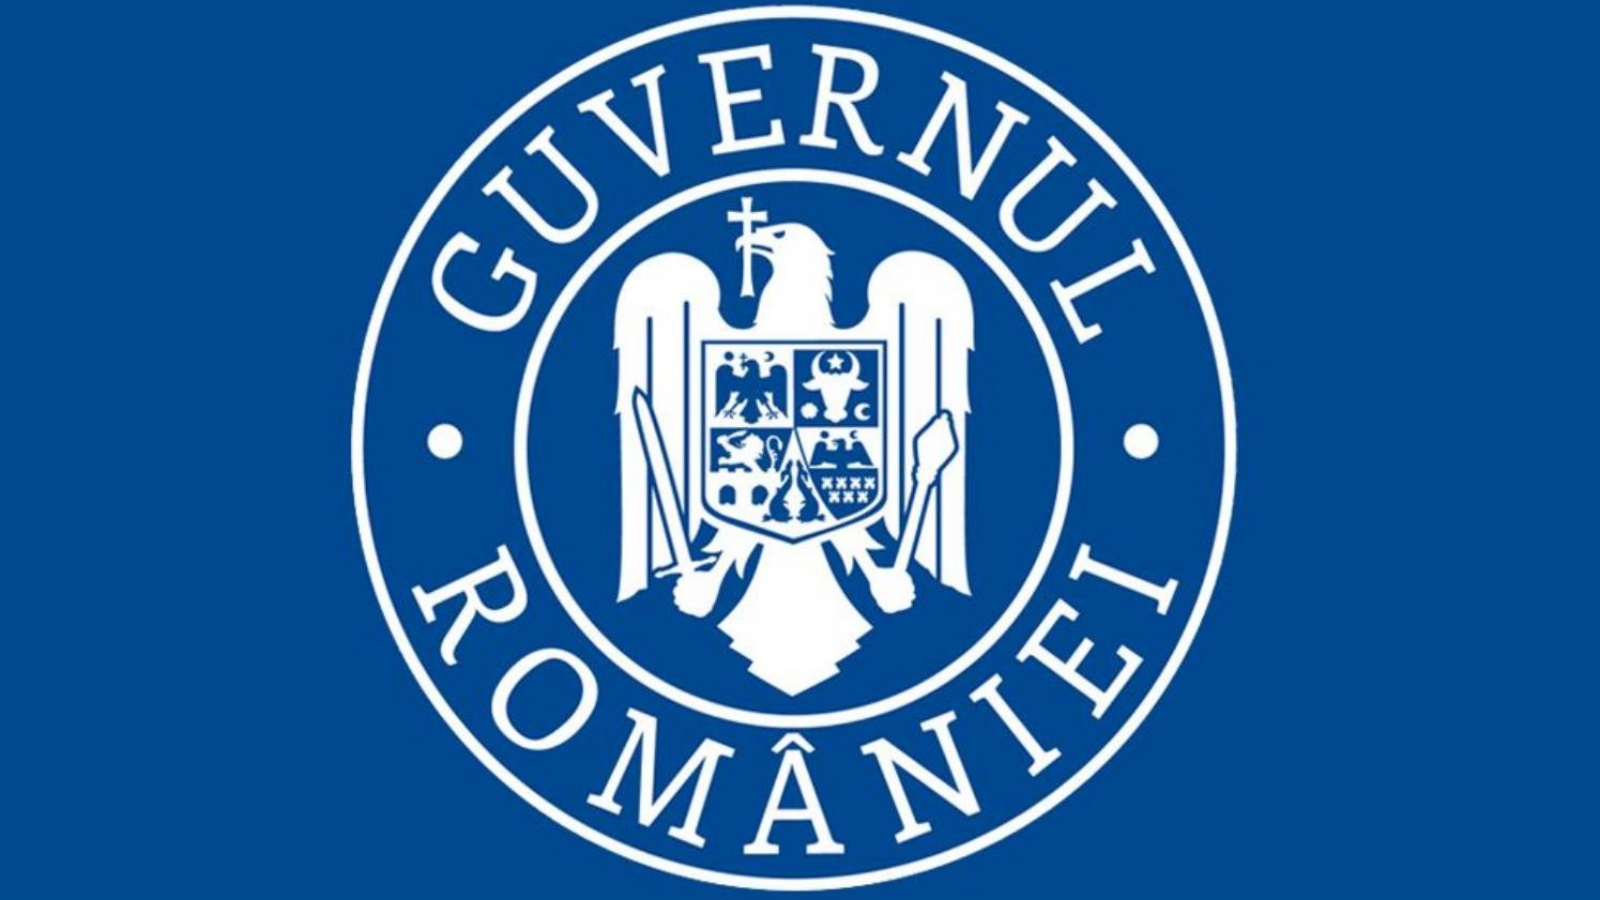 Guvernul Romaniei Noua Lista a Tarilor cu Risc Epidemiologic Ridicat